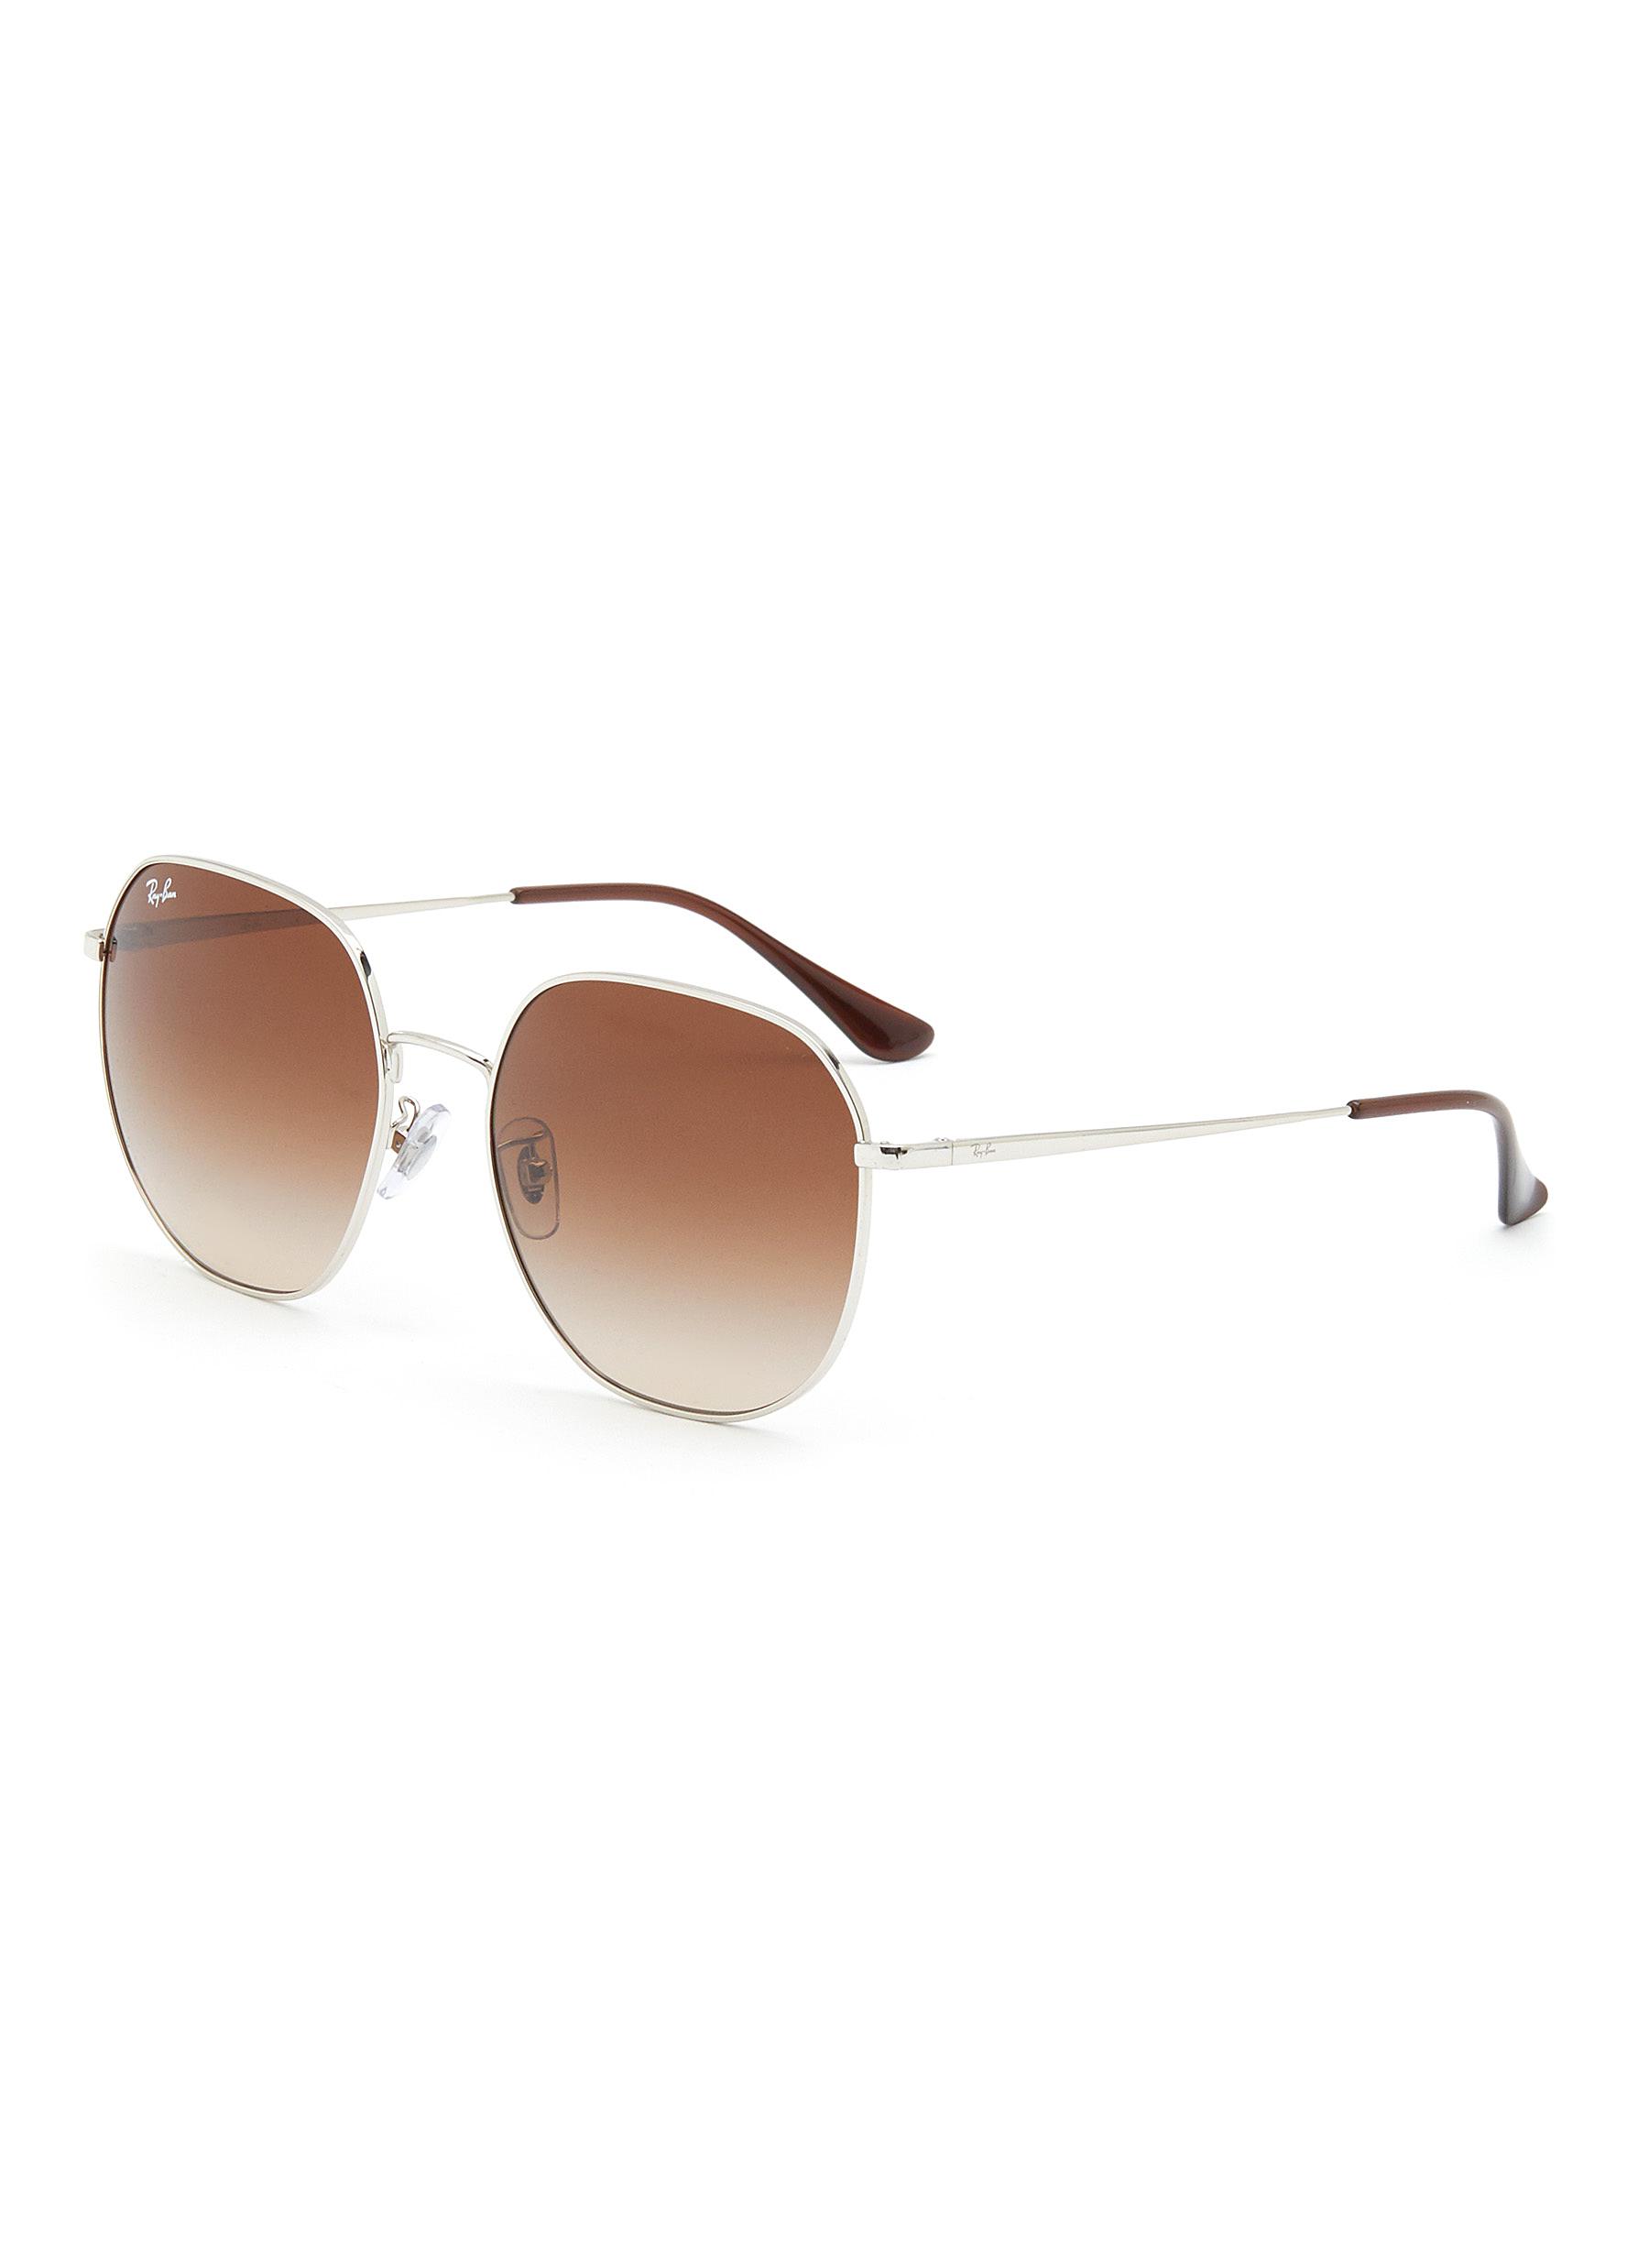 Gradient Brown Lens Silver Toned Metal Aviator Sunglasses